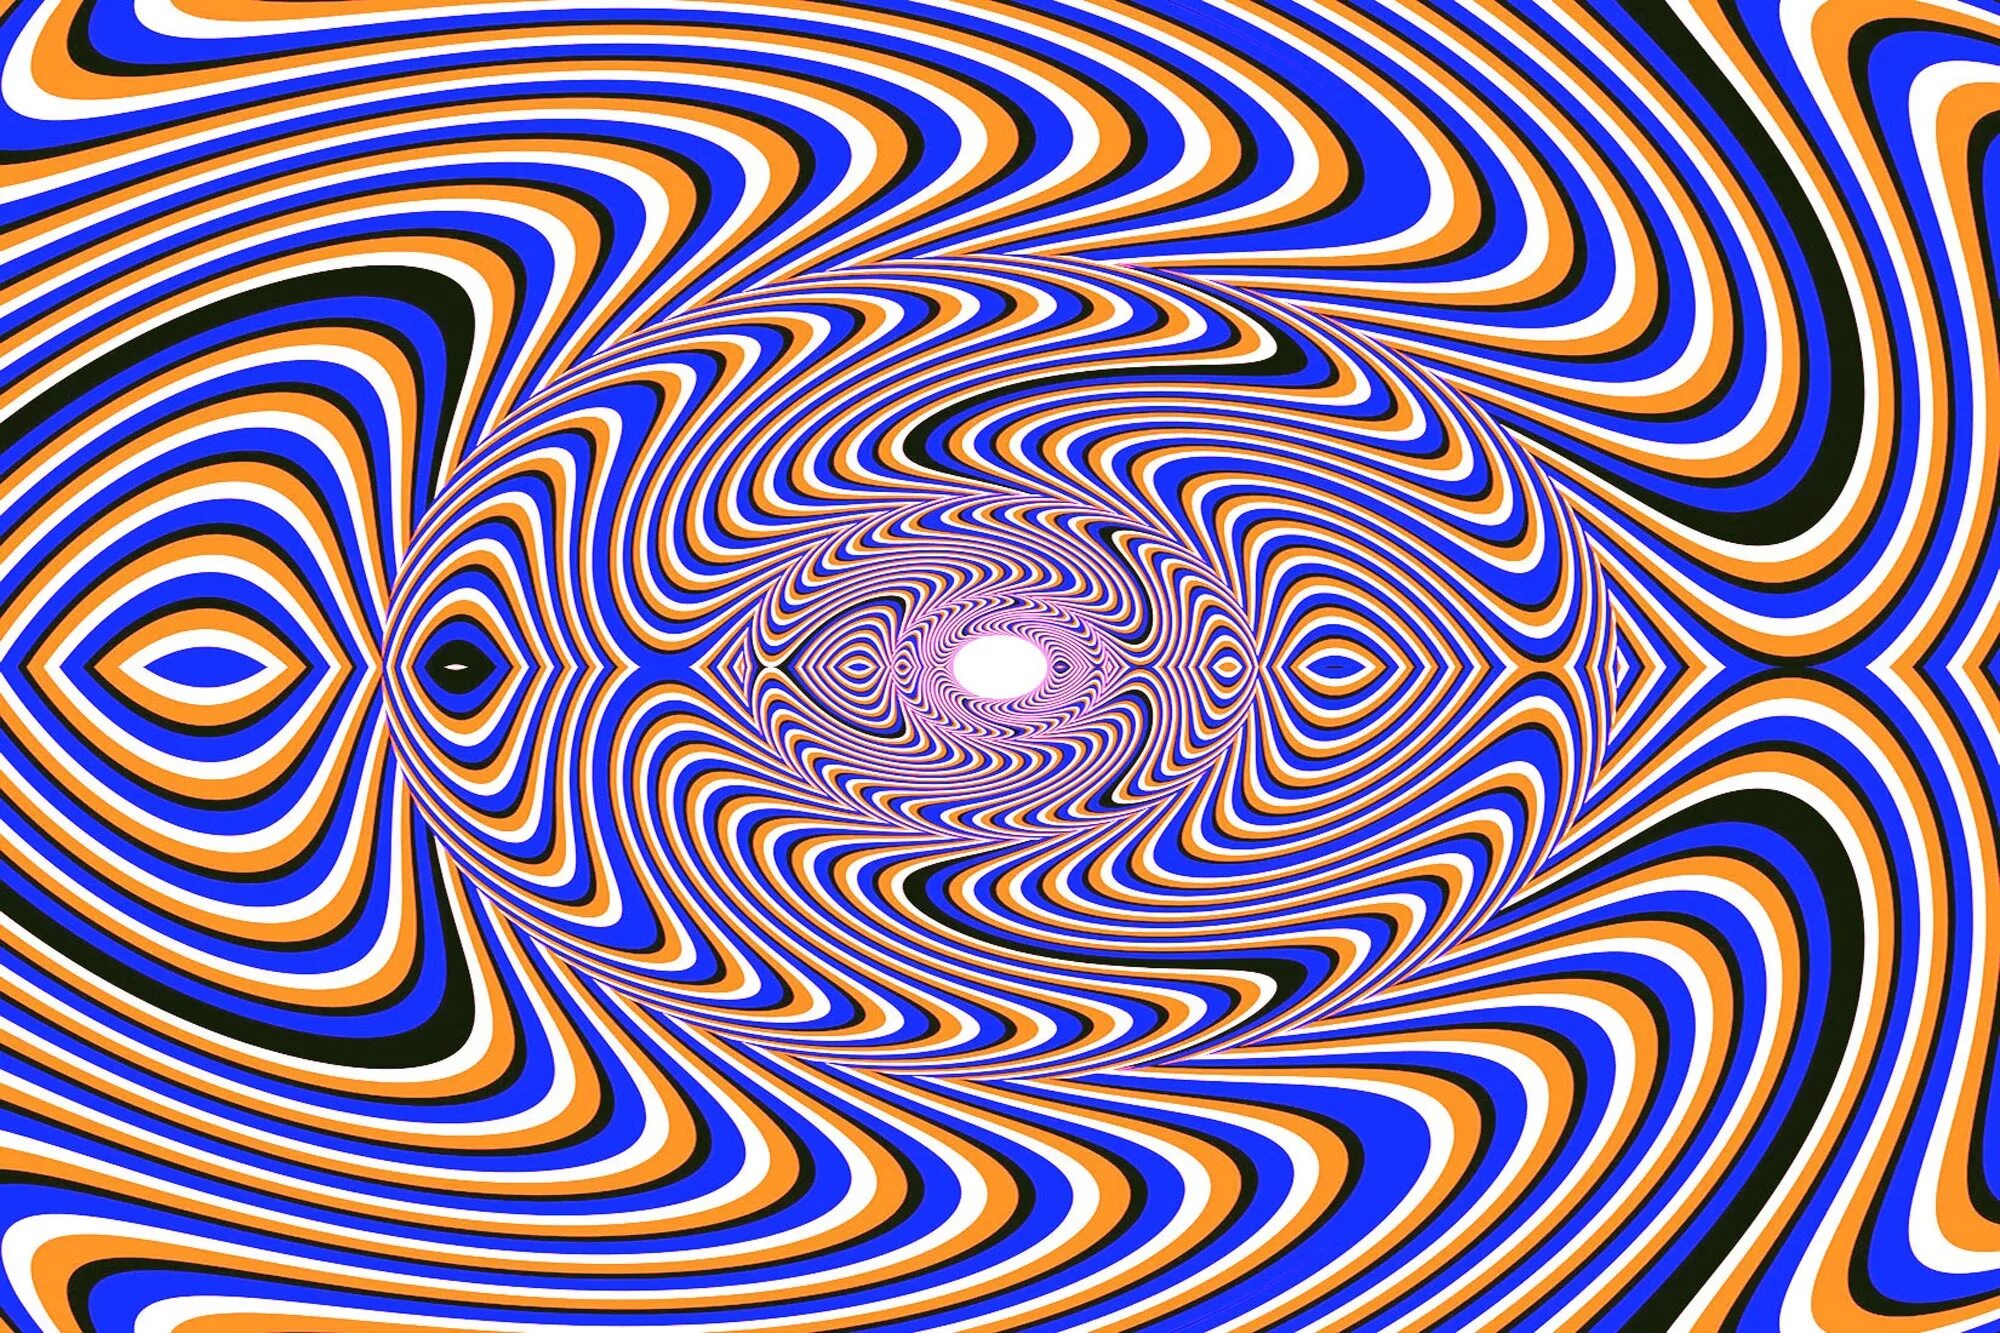 Перемещающиеся картинки. «Оптические иллюзии» (Автор Джейкобс ПЭТ). Оптикал Иллюжн. Иллюзия. Обман зрения.